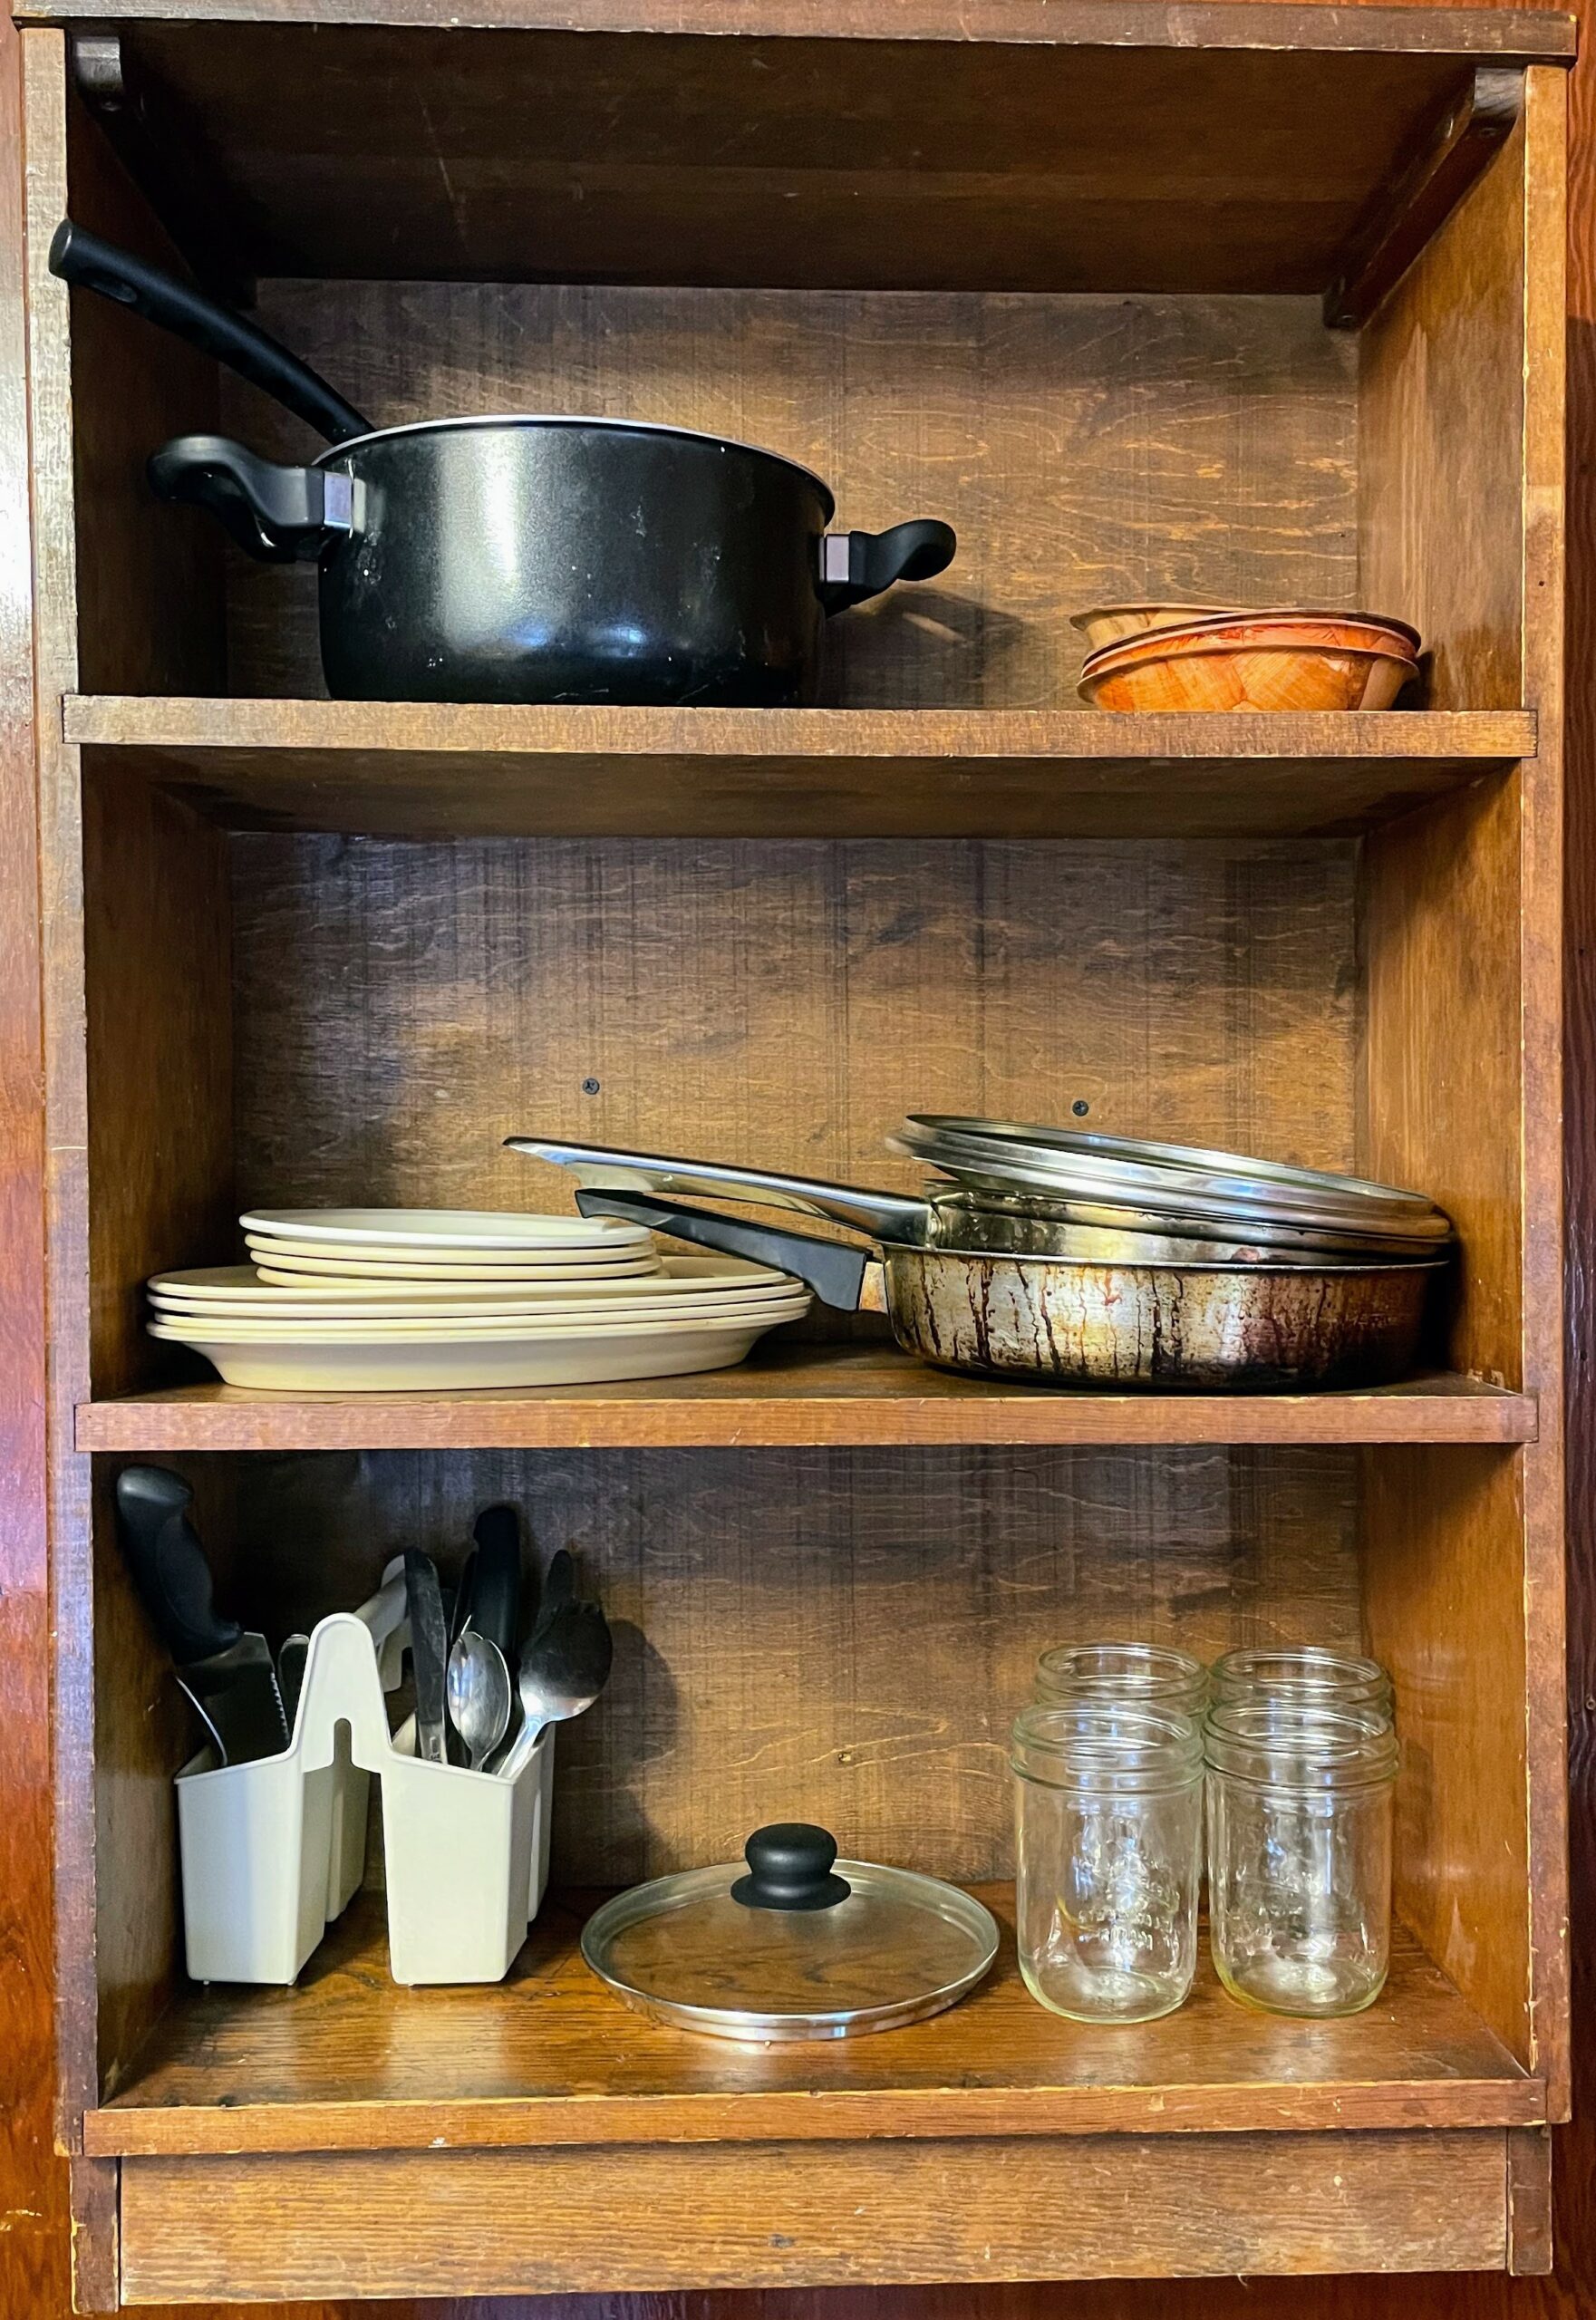 Lodge C2 kitchen utensils